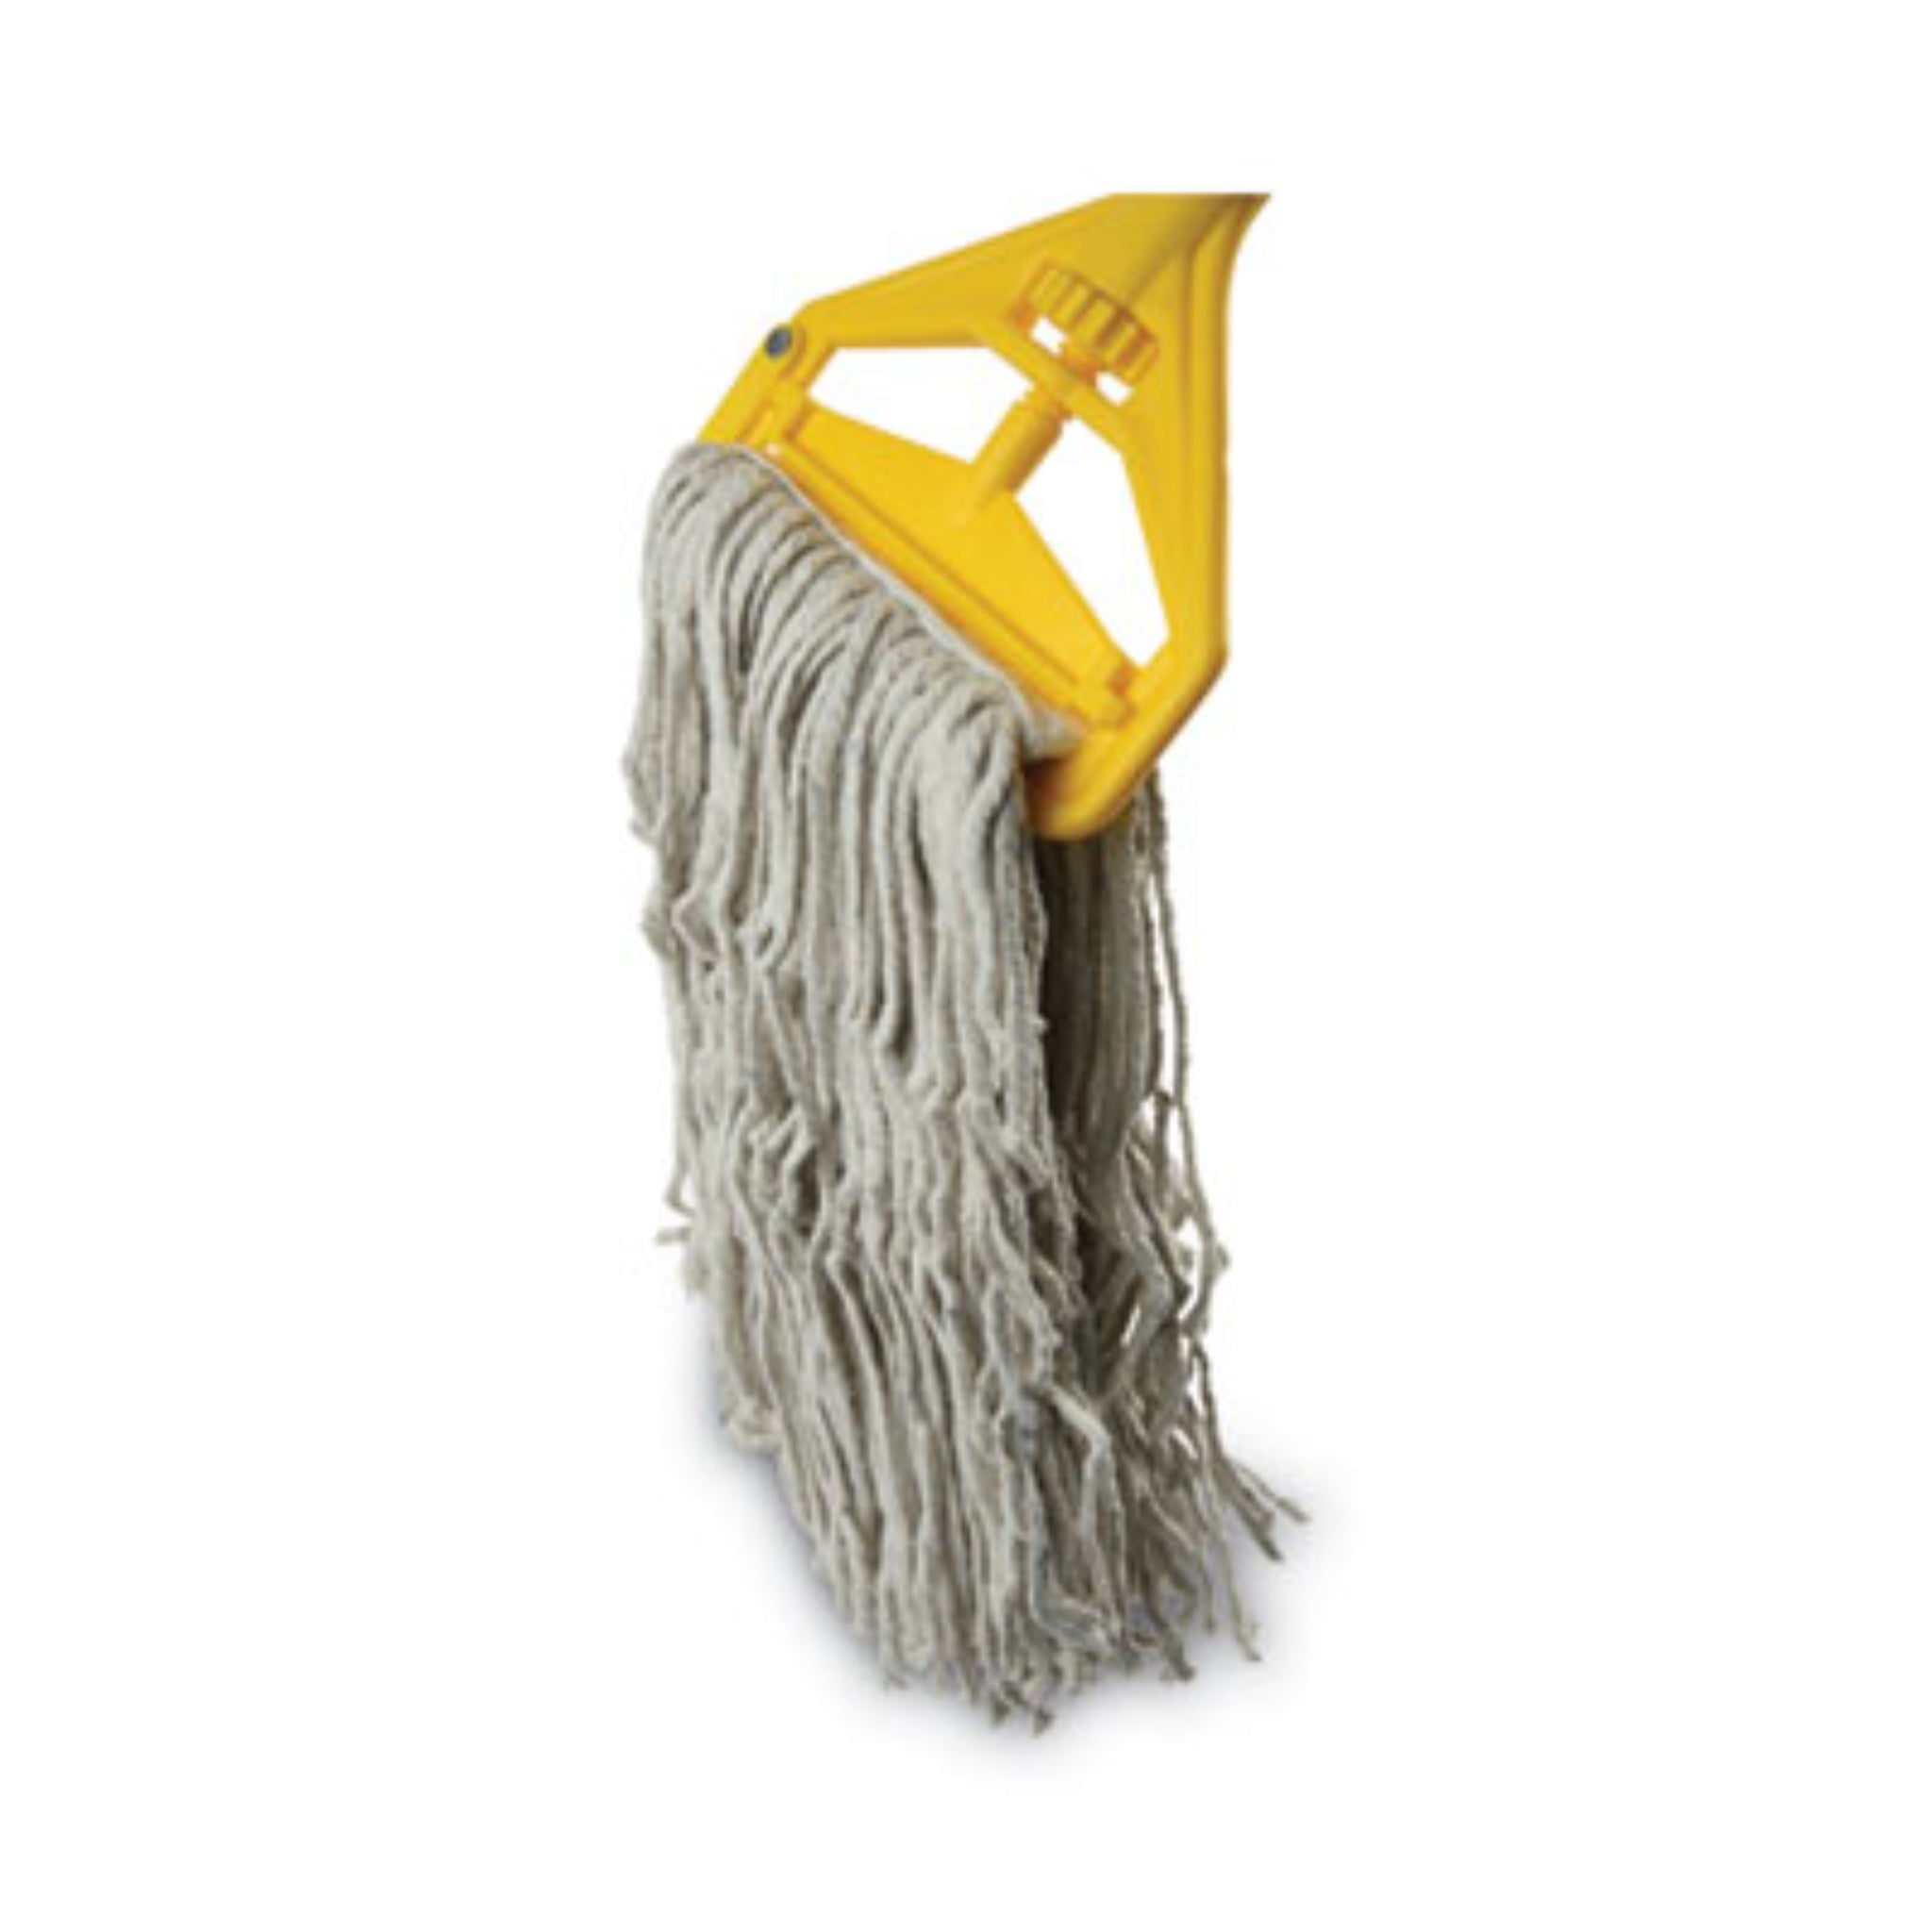 BOARDWALK BWK620 Quick Change Side-Latch Plastic Mop Head Handle, Mop Head Sold Separately